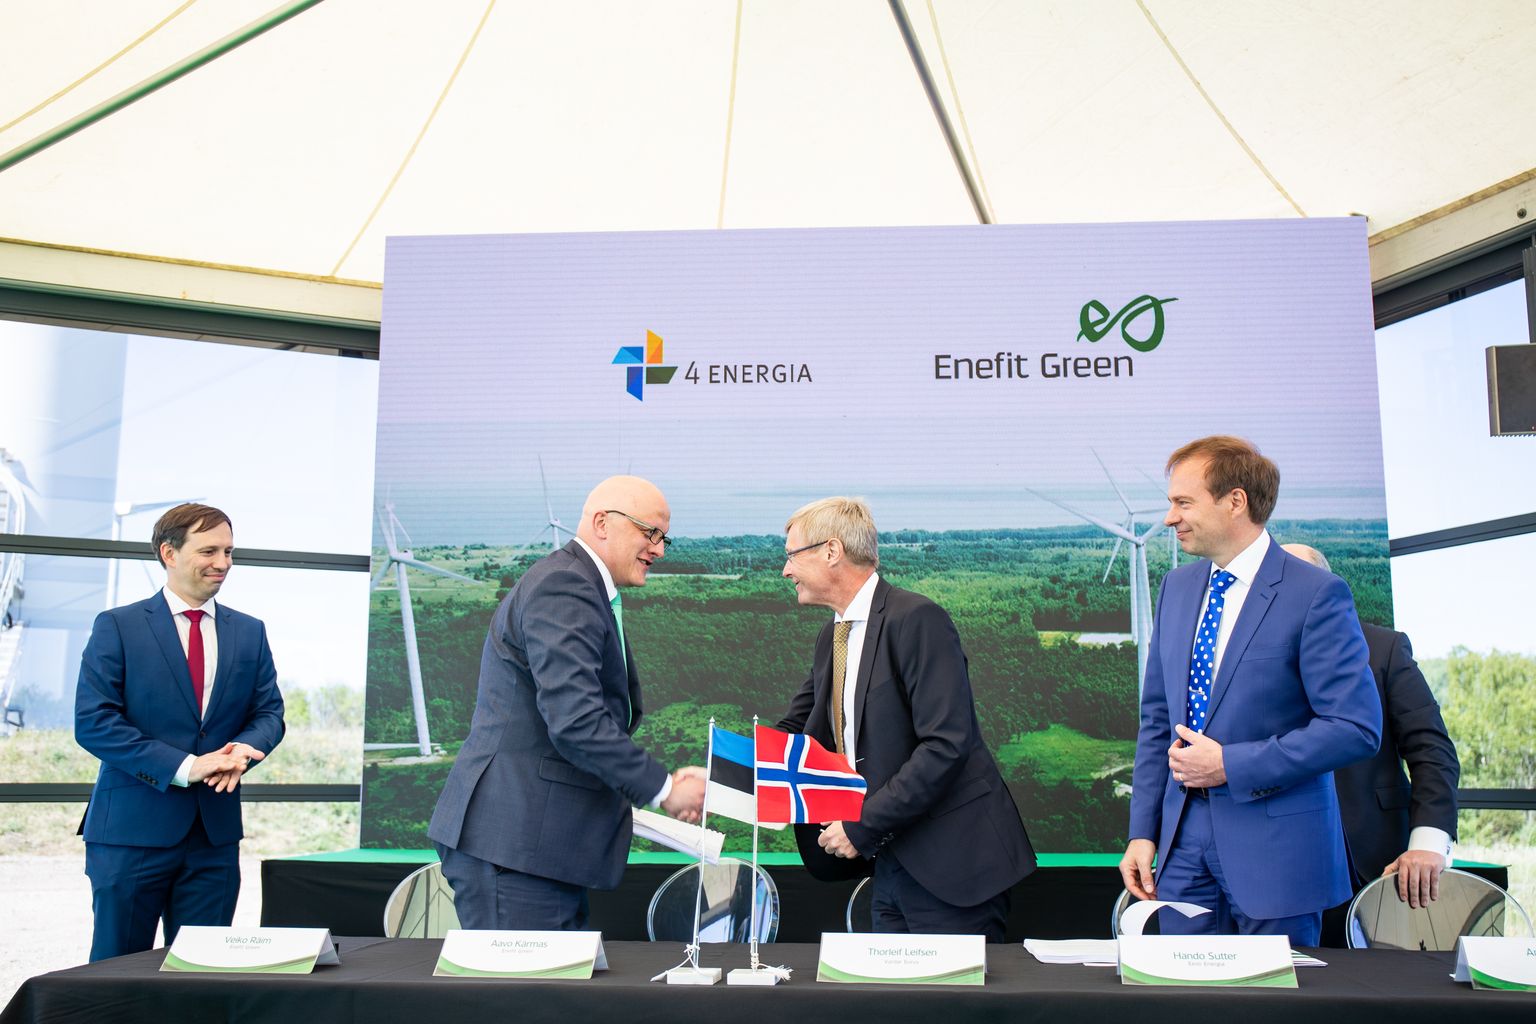 29.05.2018. Paldiski, Harjumaa. 
Eesti Energia ja Vardar sõlmisid lepingu 4Energia ostuks Enefit Green poolt.